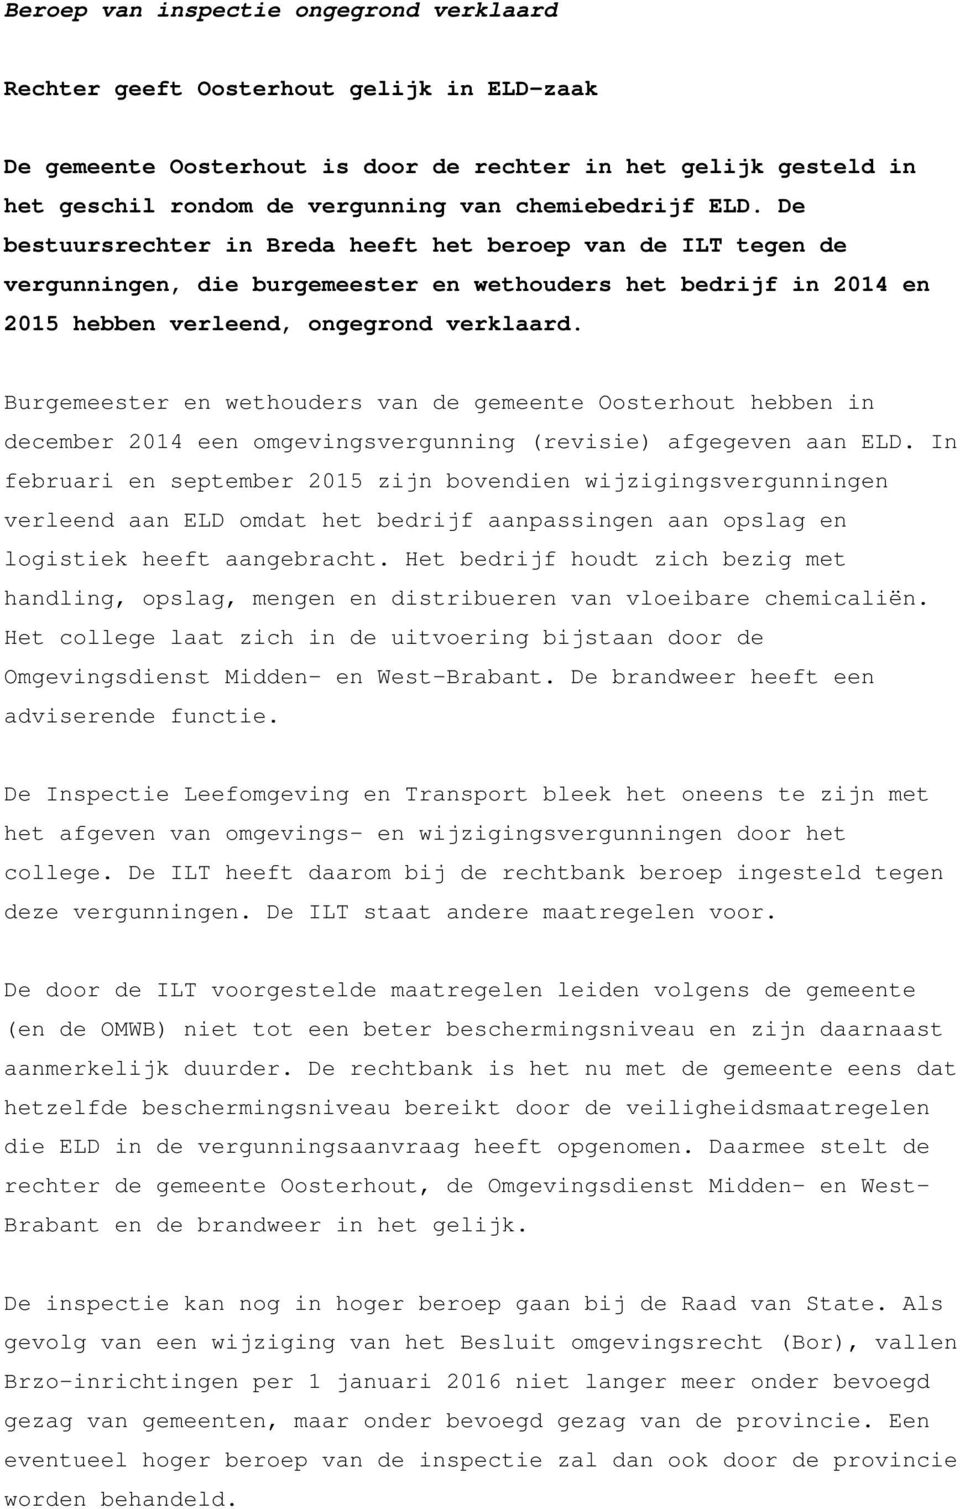 Burgemeester en wethouders van de gemeente Oosterhout hebben in december 2014 een omgevingsvergunning (revisie) afgegeven aan ELD.